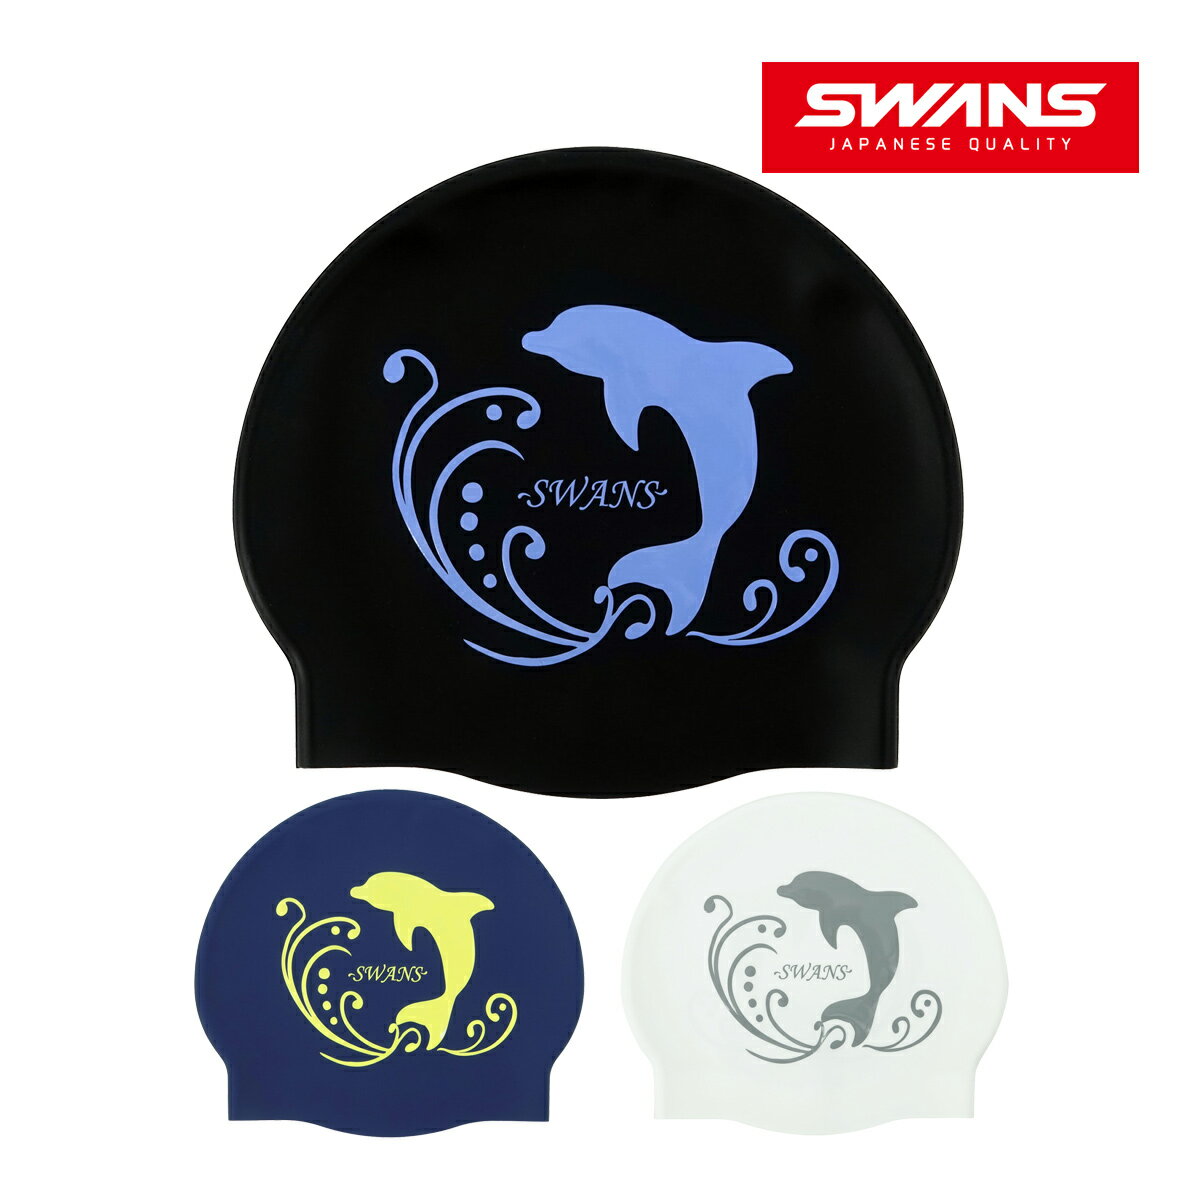 水泳帽子 シリコンキャップ ドルフィン スイムキャップ 大人 かわいい 日本製 競泳 Fina承認モデル スイミングキャップ スワンズ SWANS